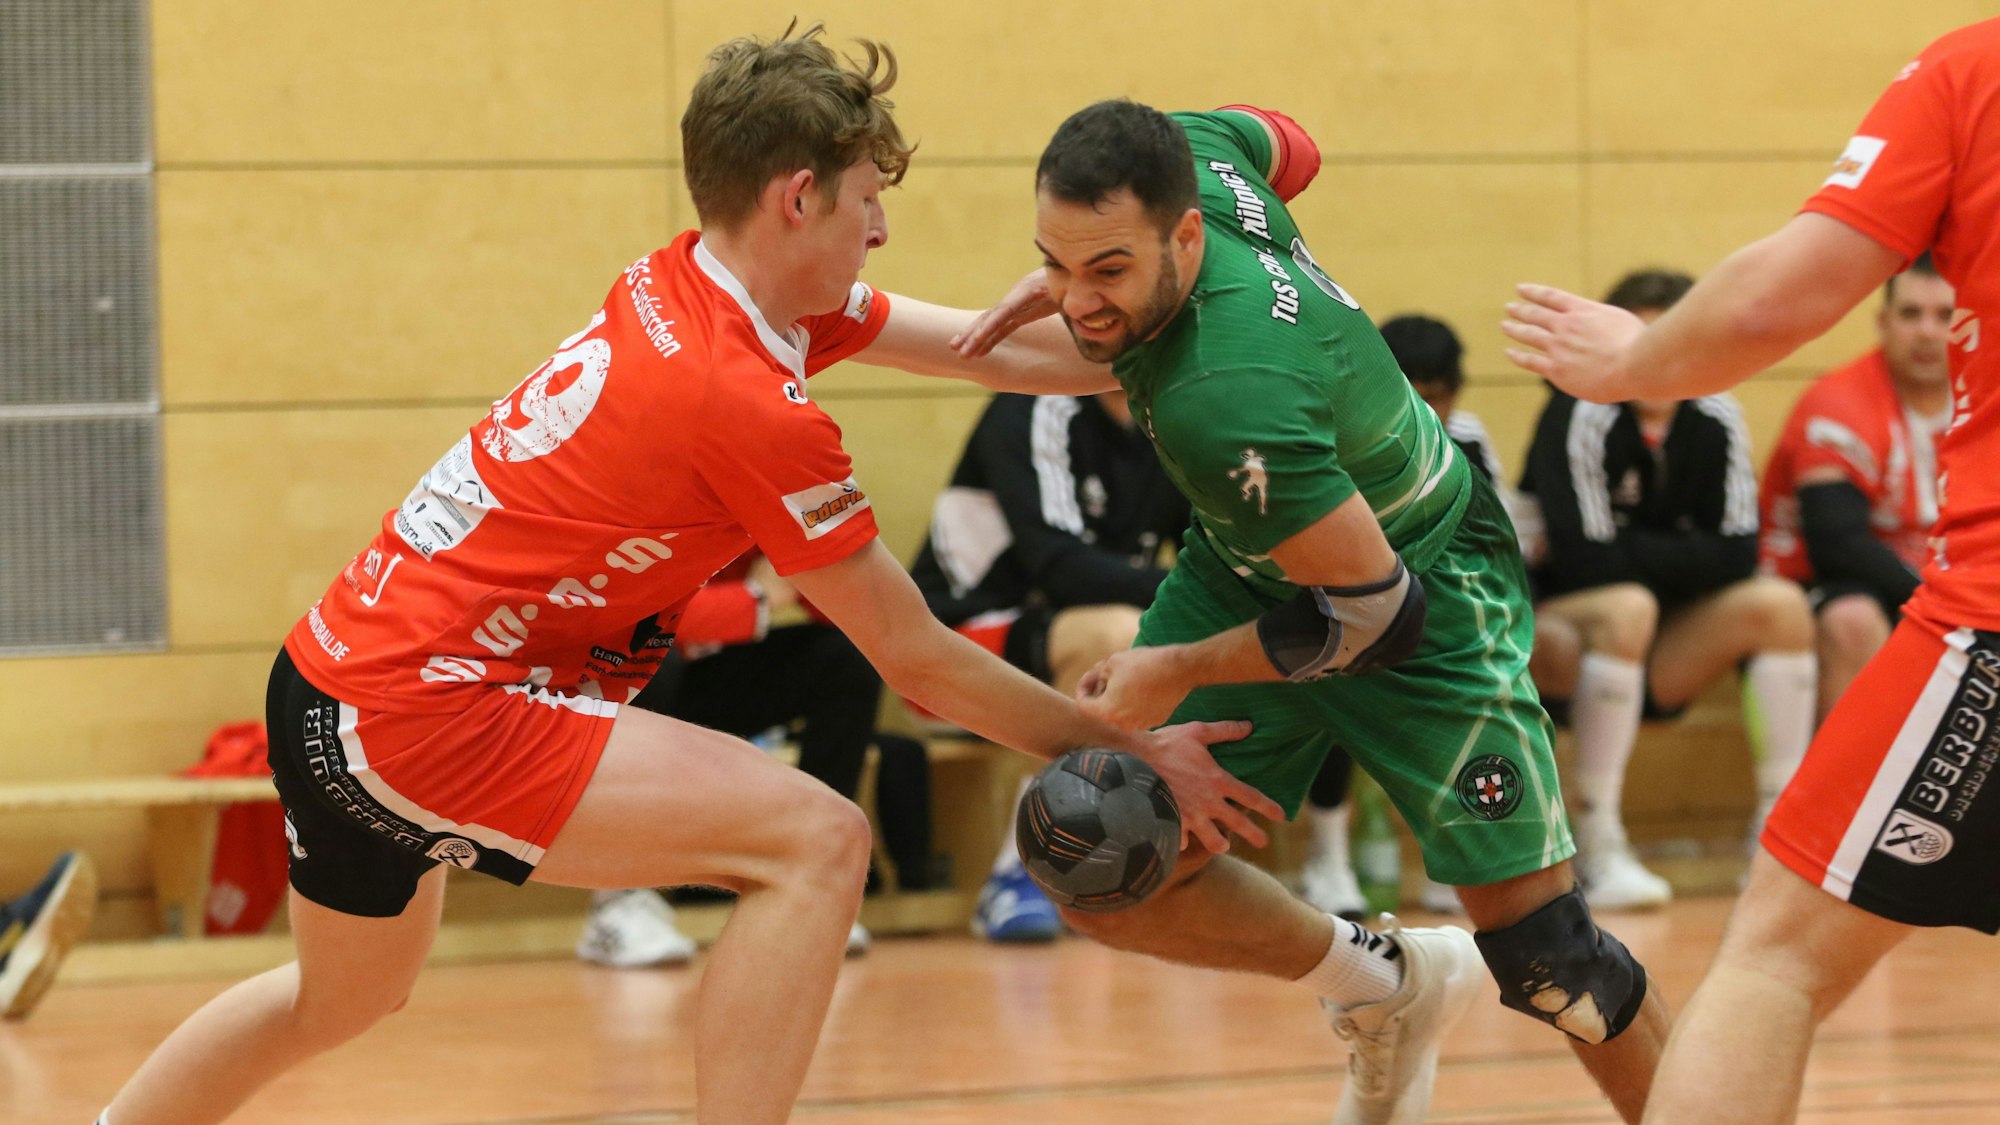 Handballspieler aus Euskirchen (in Rot) und Zülpich (in Grün) kämpfen um den Ball.